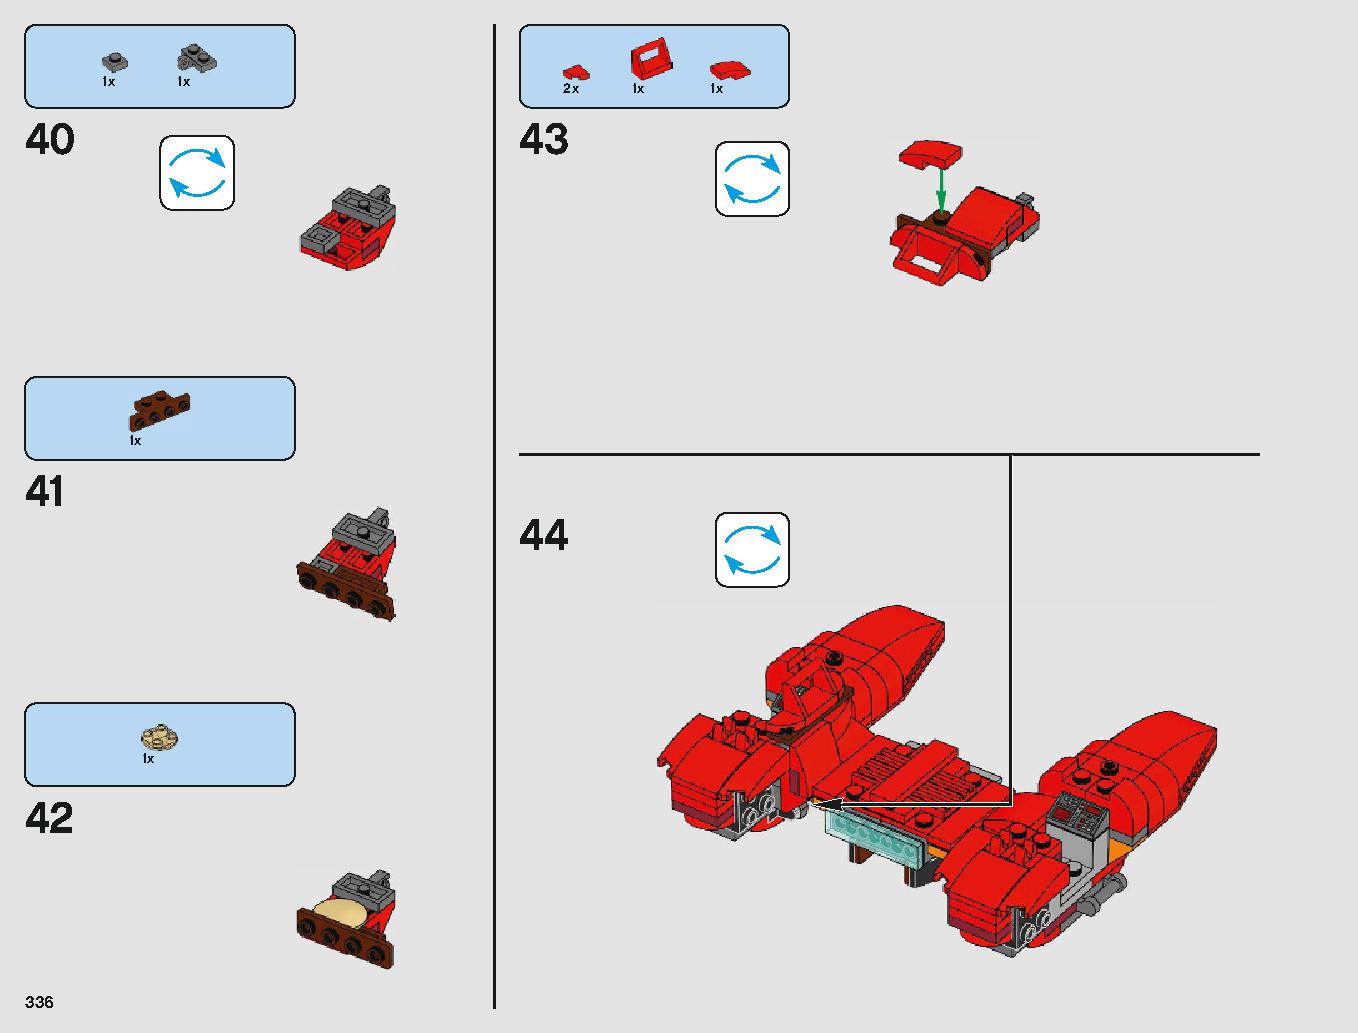 クラウド・シティ 75222 レゴの商品情報 レゴの説明書・組立方法 336 page